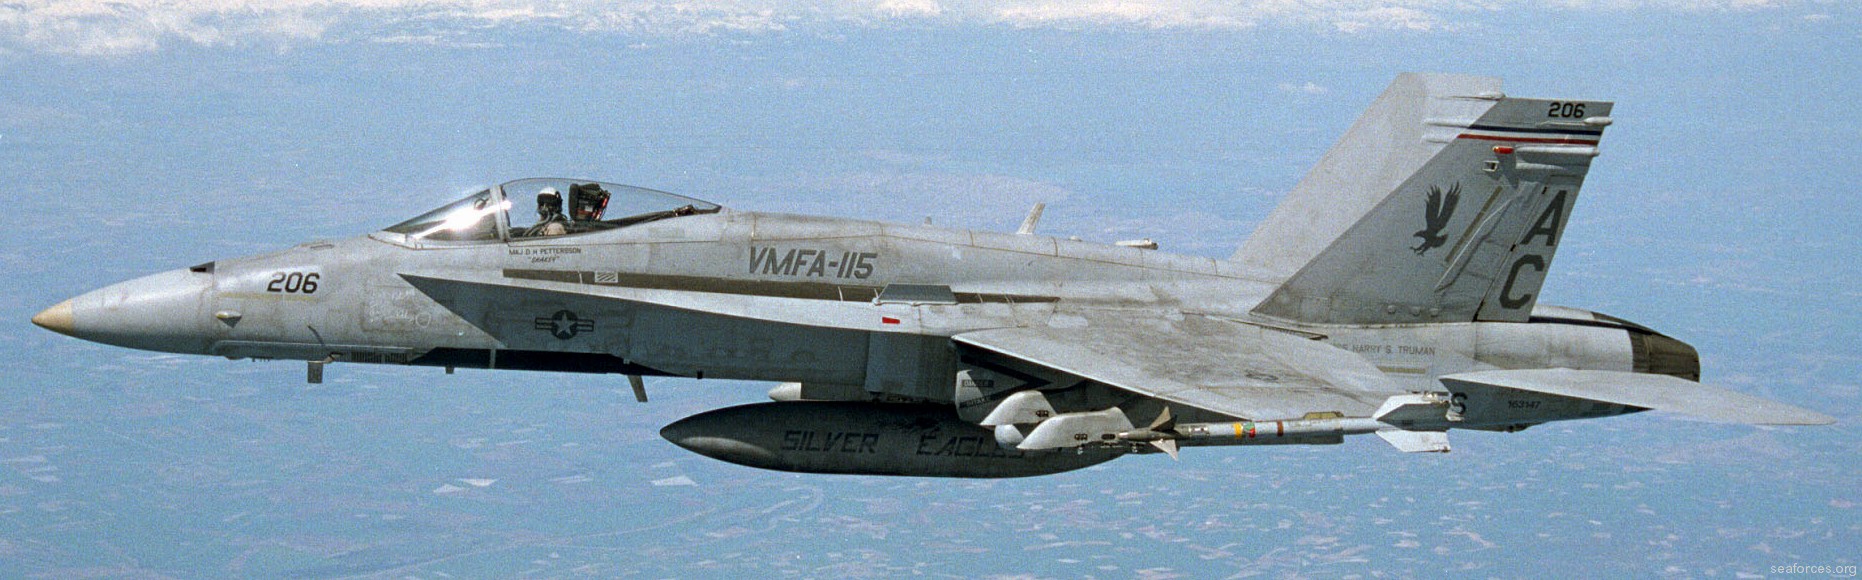 vmfa-115 silver eagles marine fighter attack squadron f/a-18a+ hornet 61